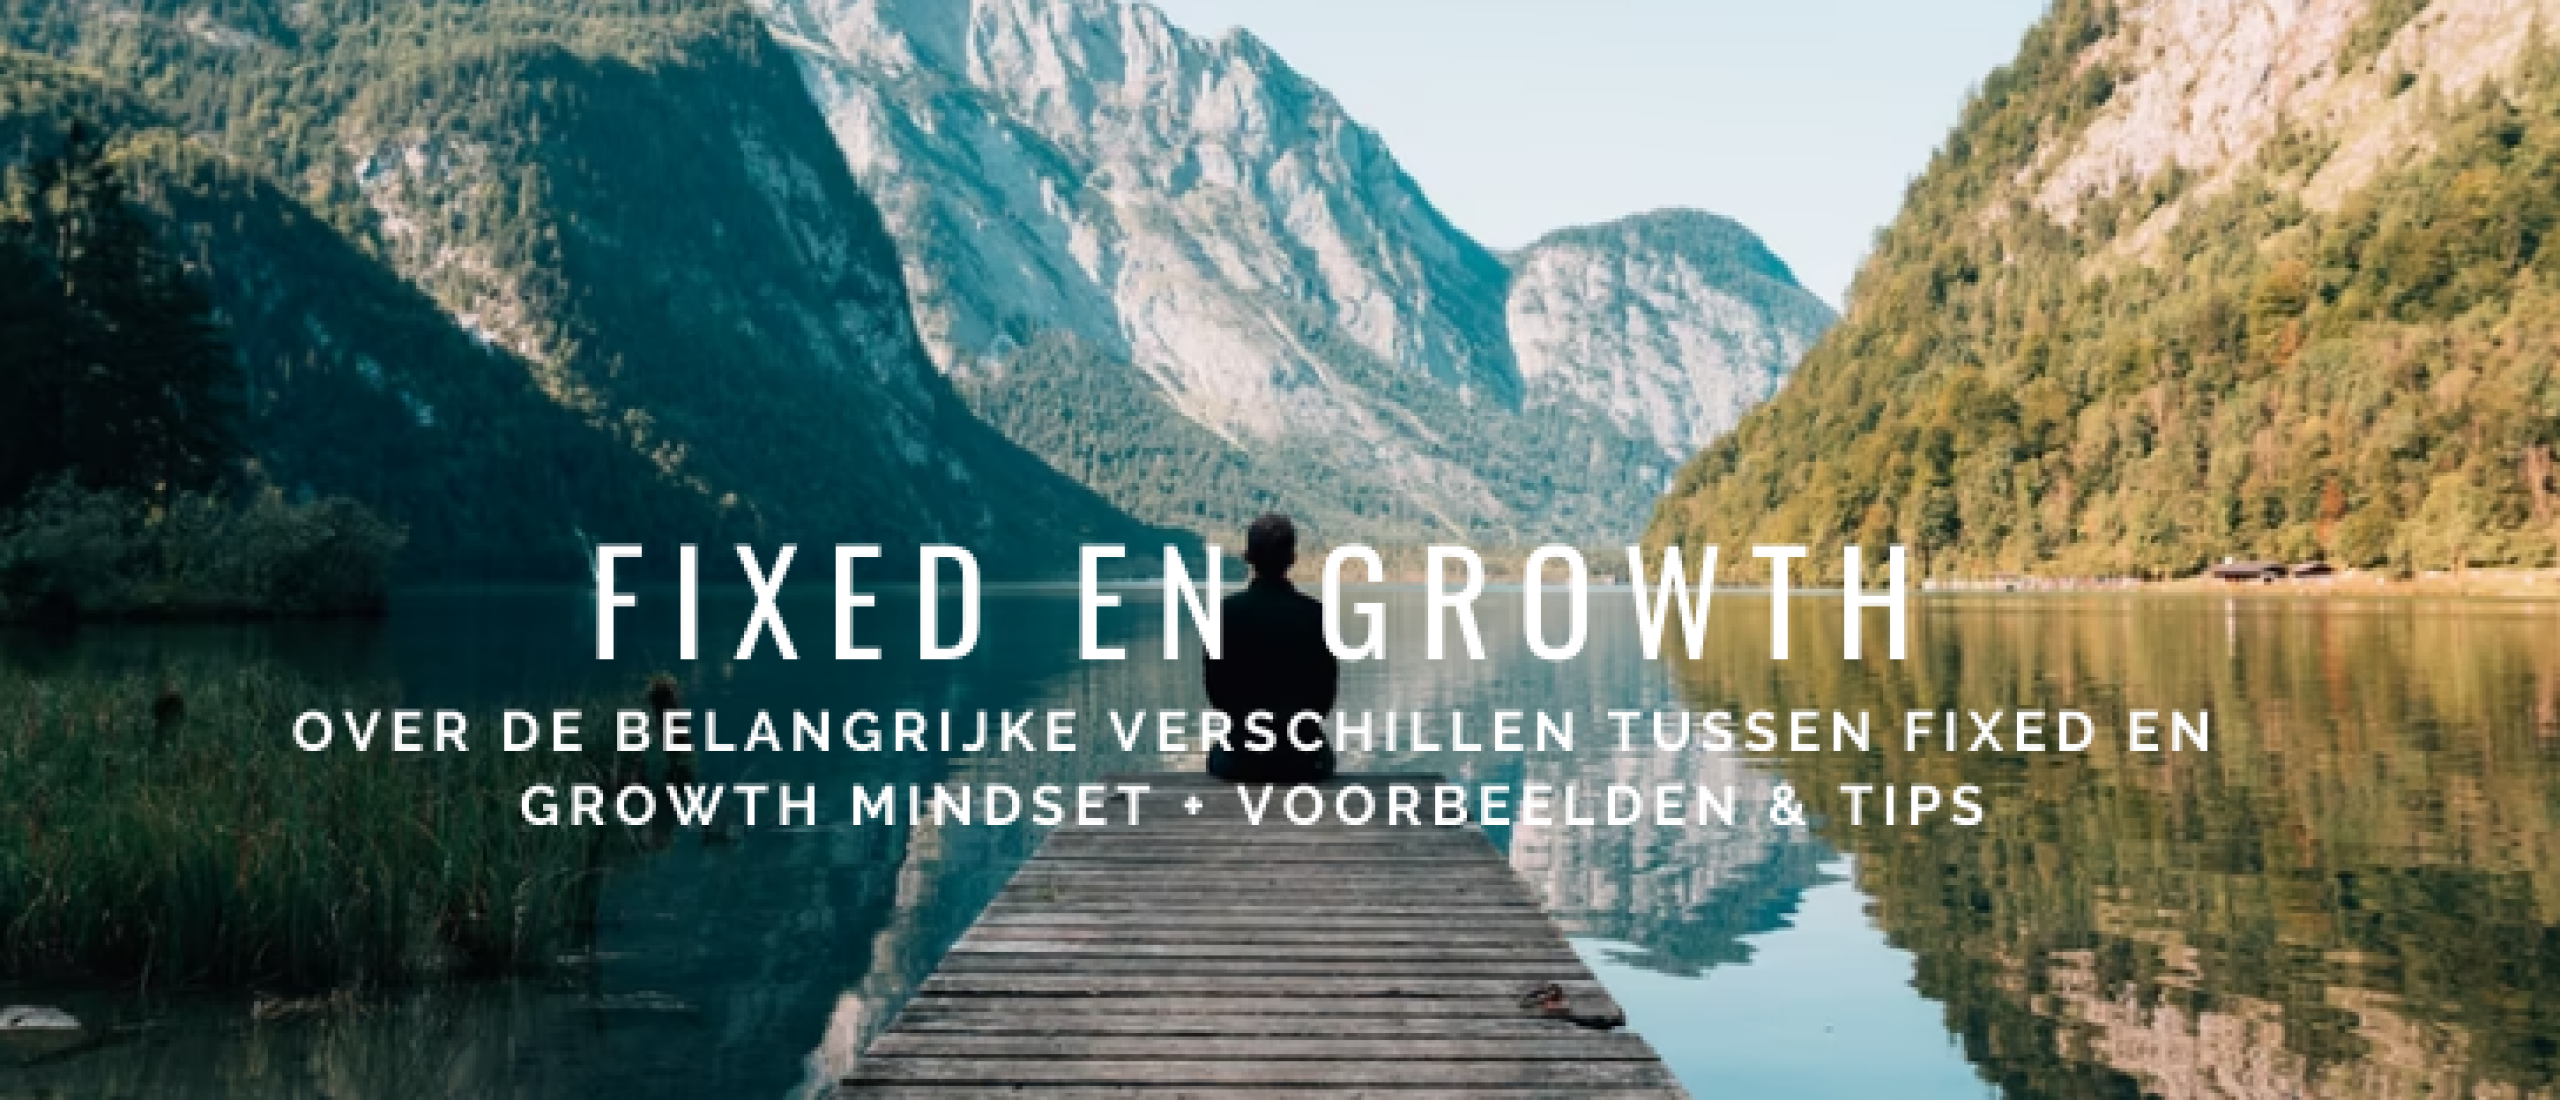 wat-is-fixed-en-growth-mindset